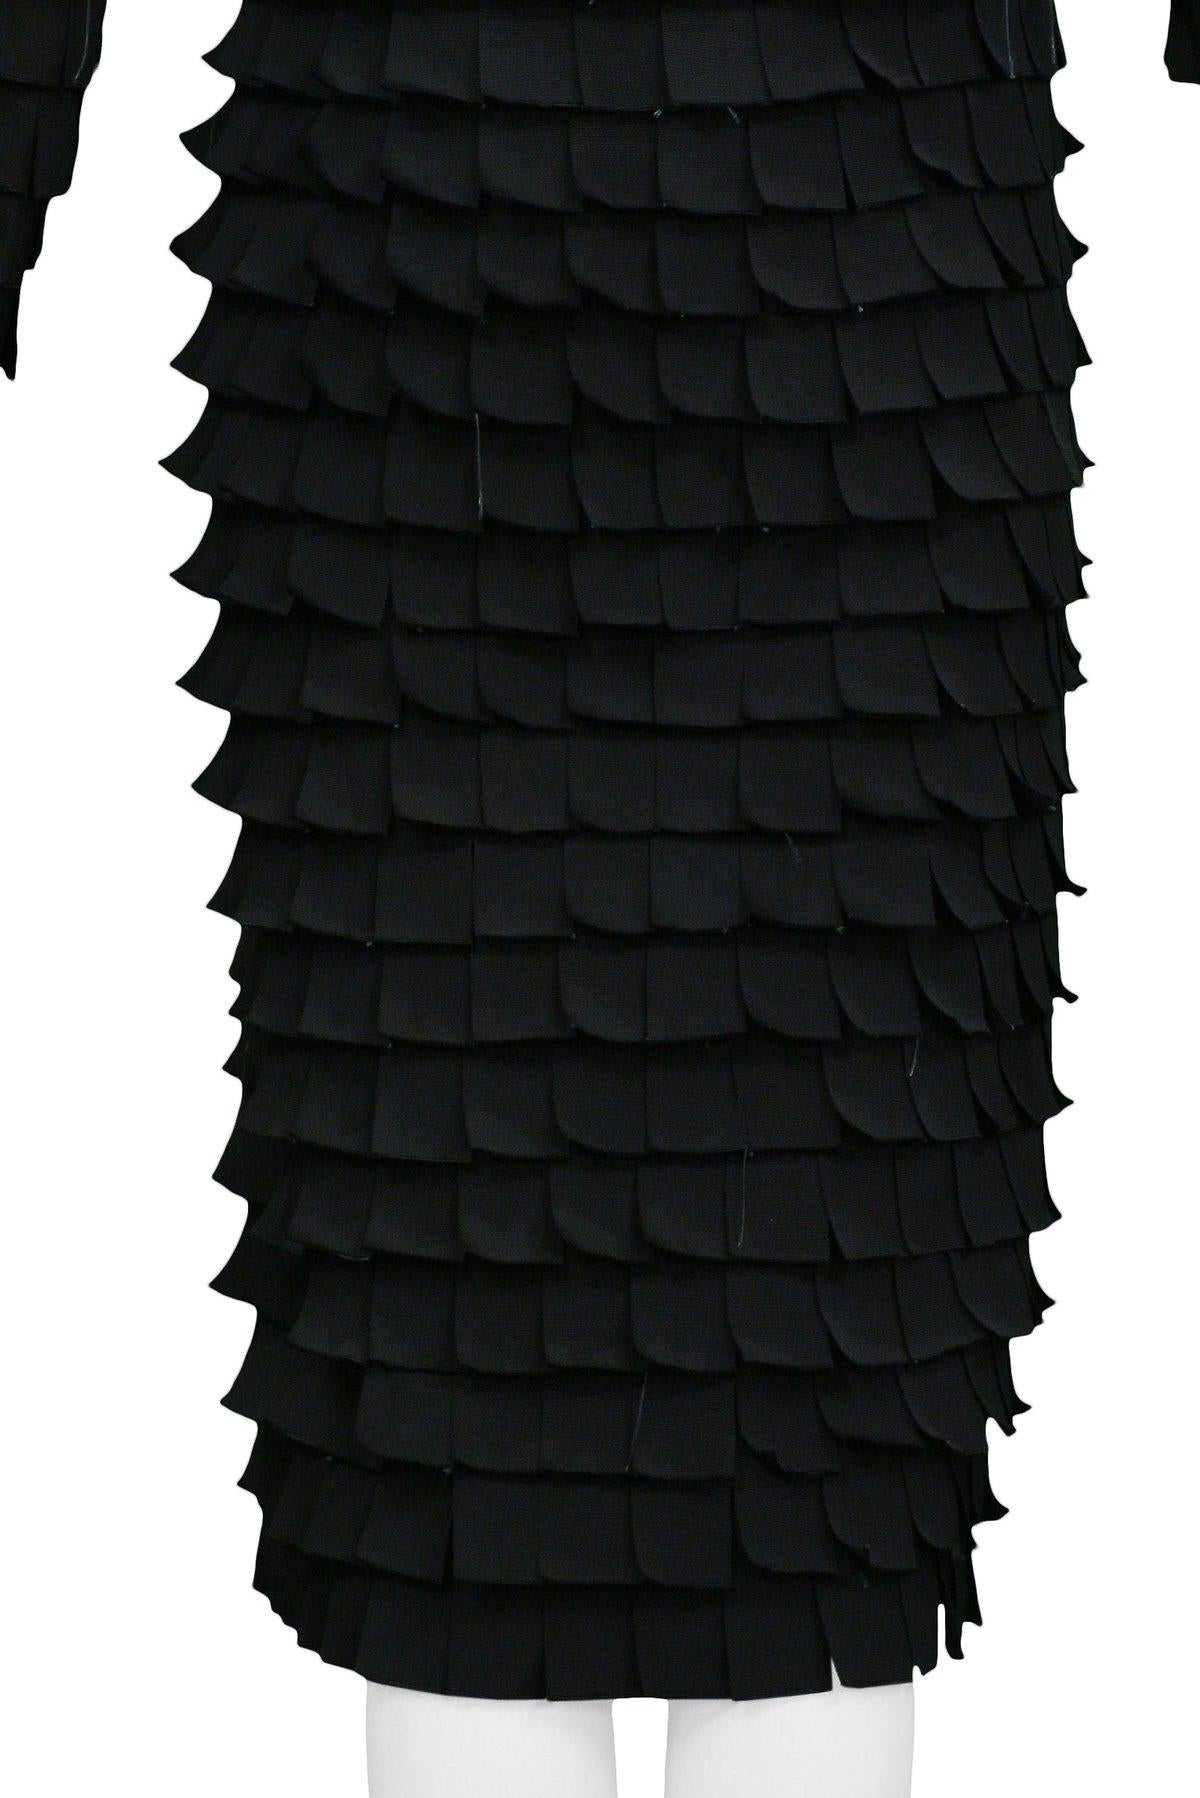 Manteau de défilé Icci By Tom Ford Tab noir 2001 en vente 2